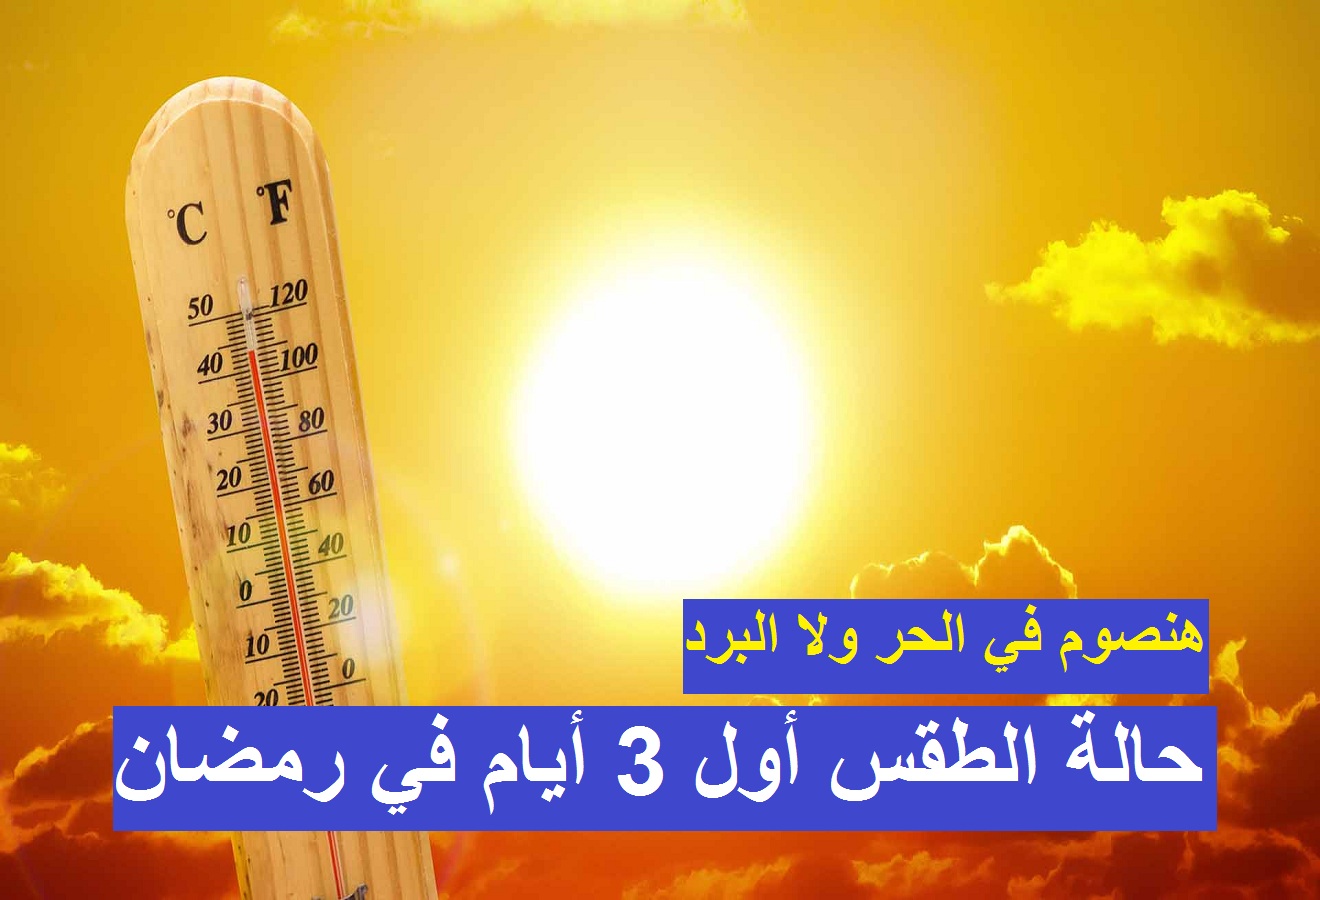 “هنصوم في الحر ولا البرد” الأرصاد تكشف حالة الطقس اول أيام رمضان 2021 ودرجات الحرارة المتوقعة